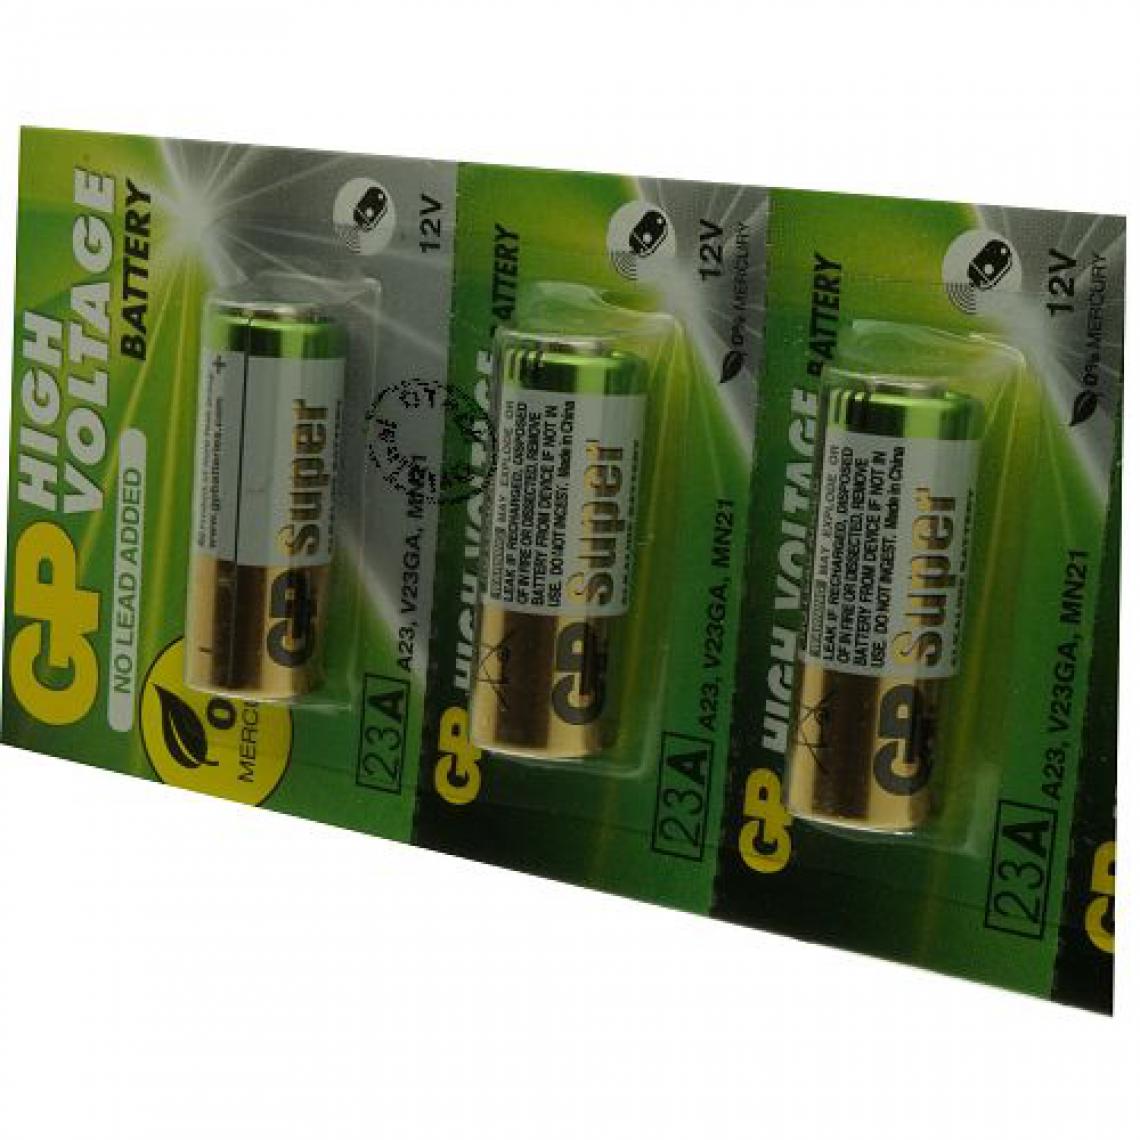 Otech - Pack de 5 piles GP pour DIVERS L1028 - Piles rechargeables